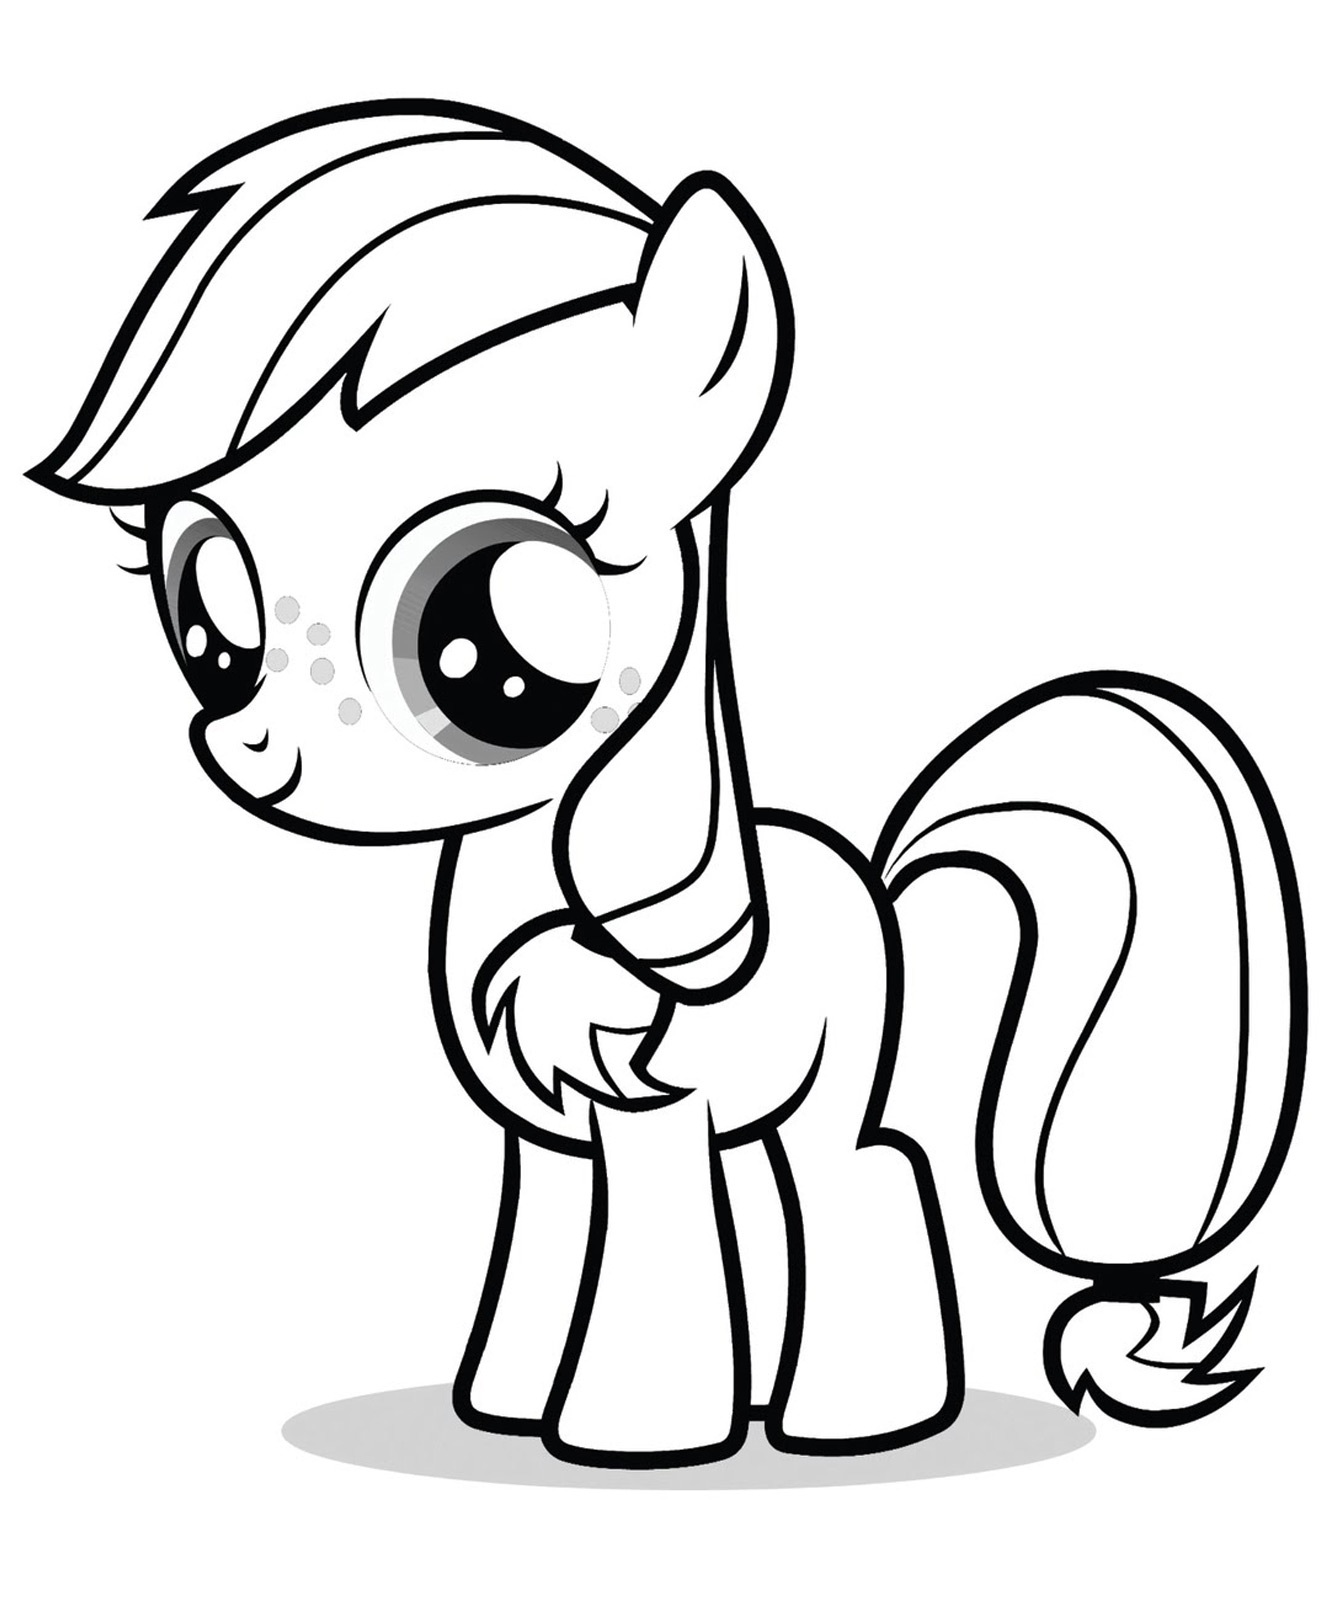 Una versión Pequeño Pony Princess de la década de 2010 para colorear